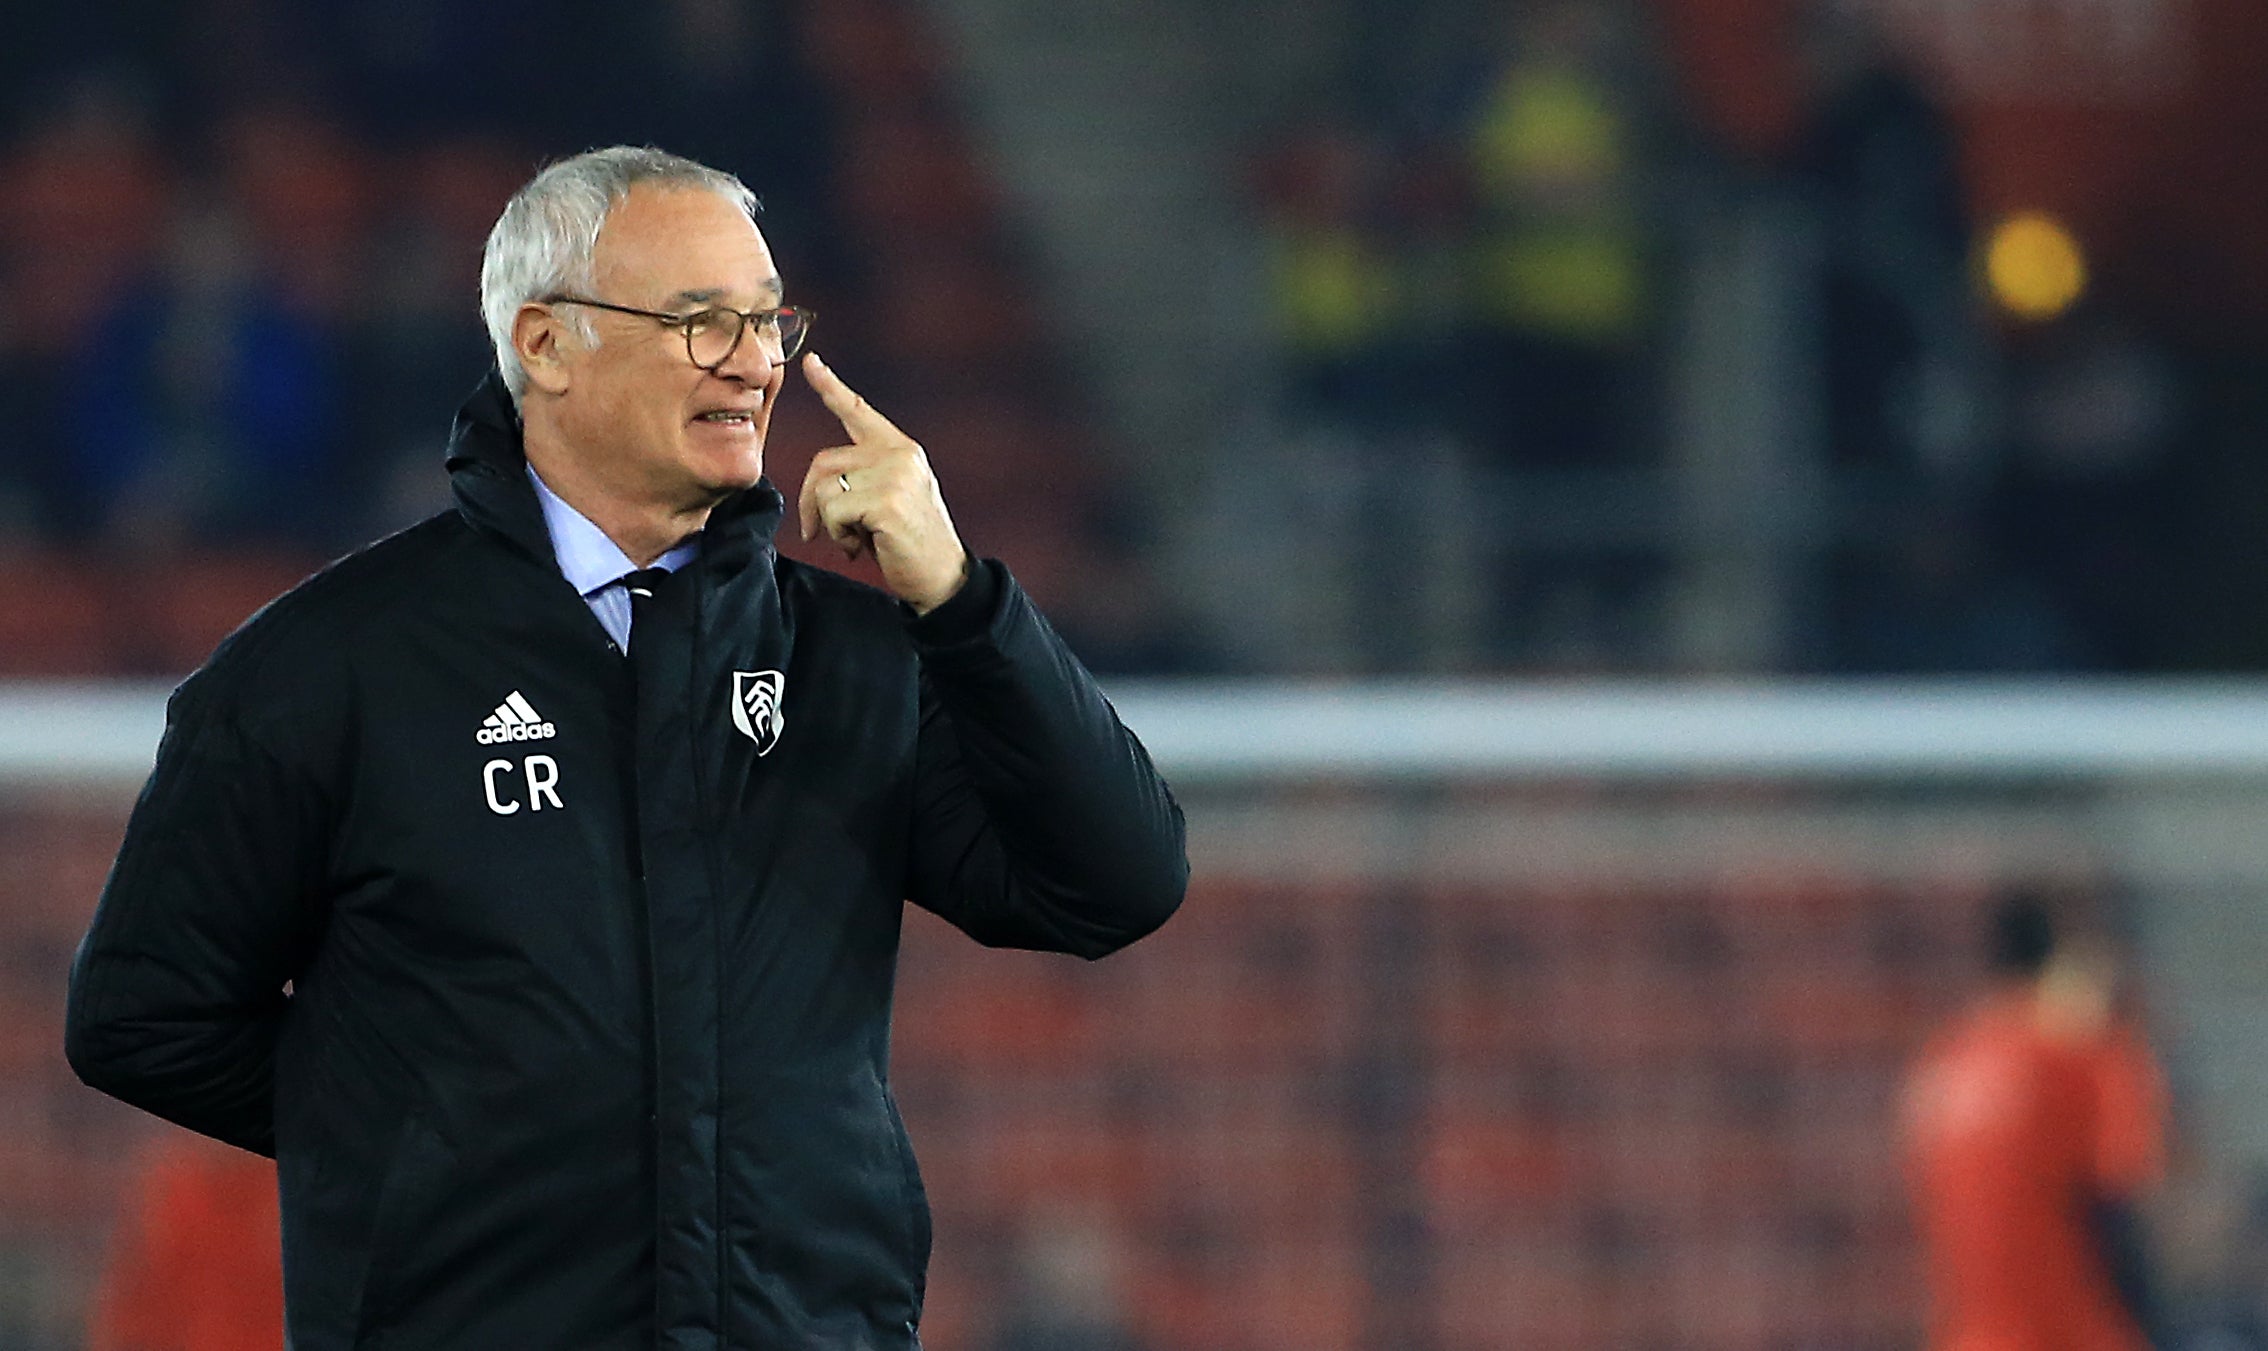 Claudio Ranieri has taken over as manager at Watford (Mark Kerton/PA)